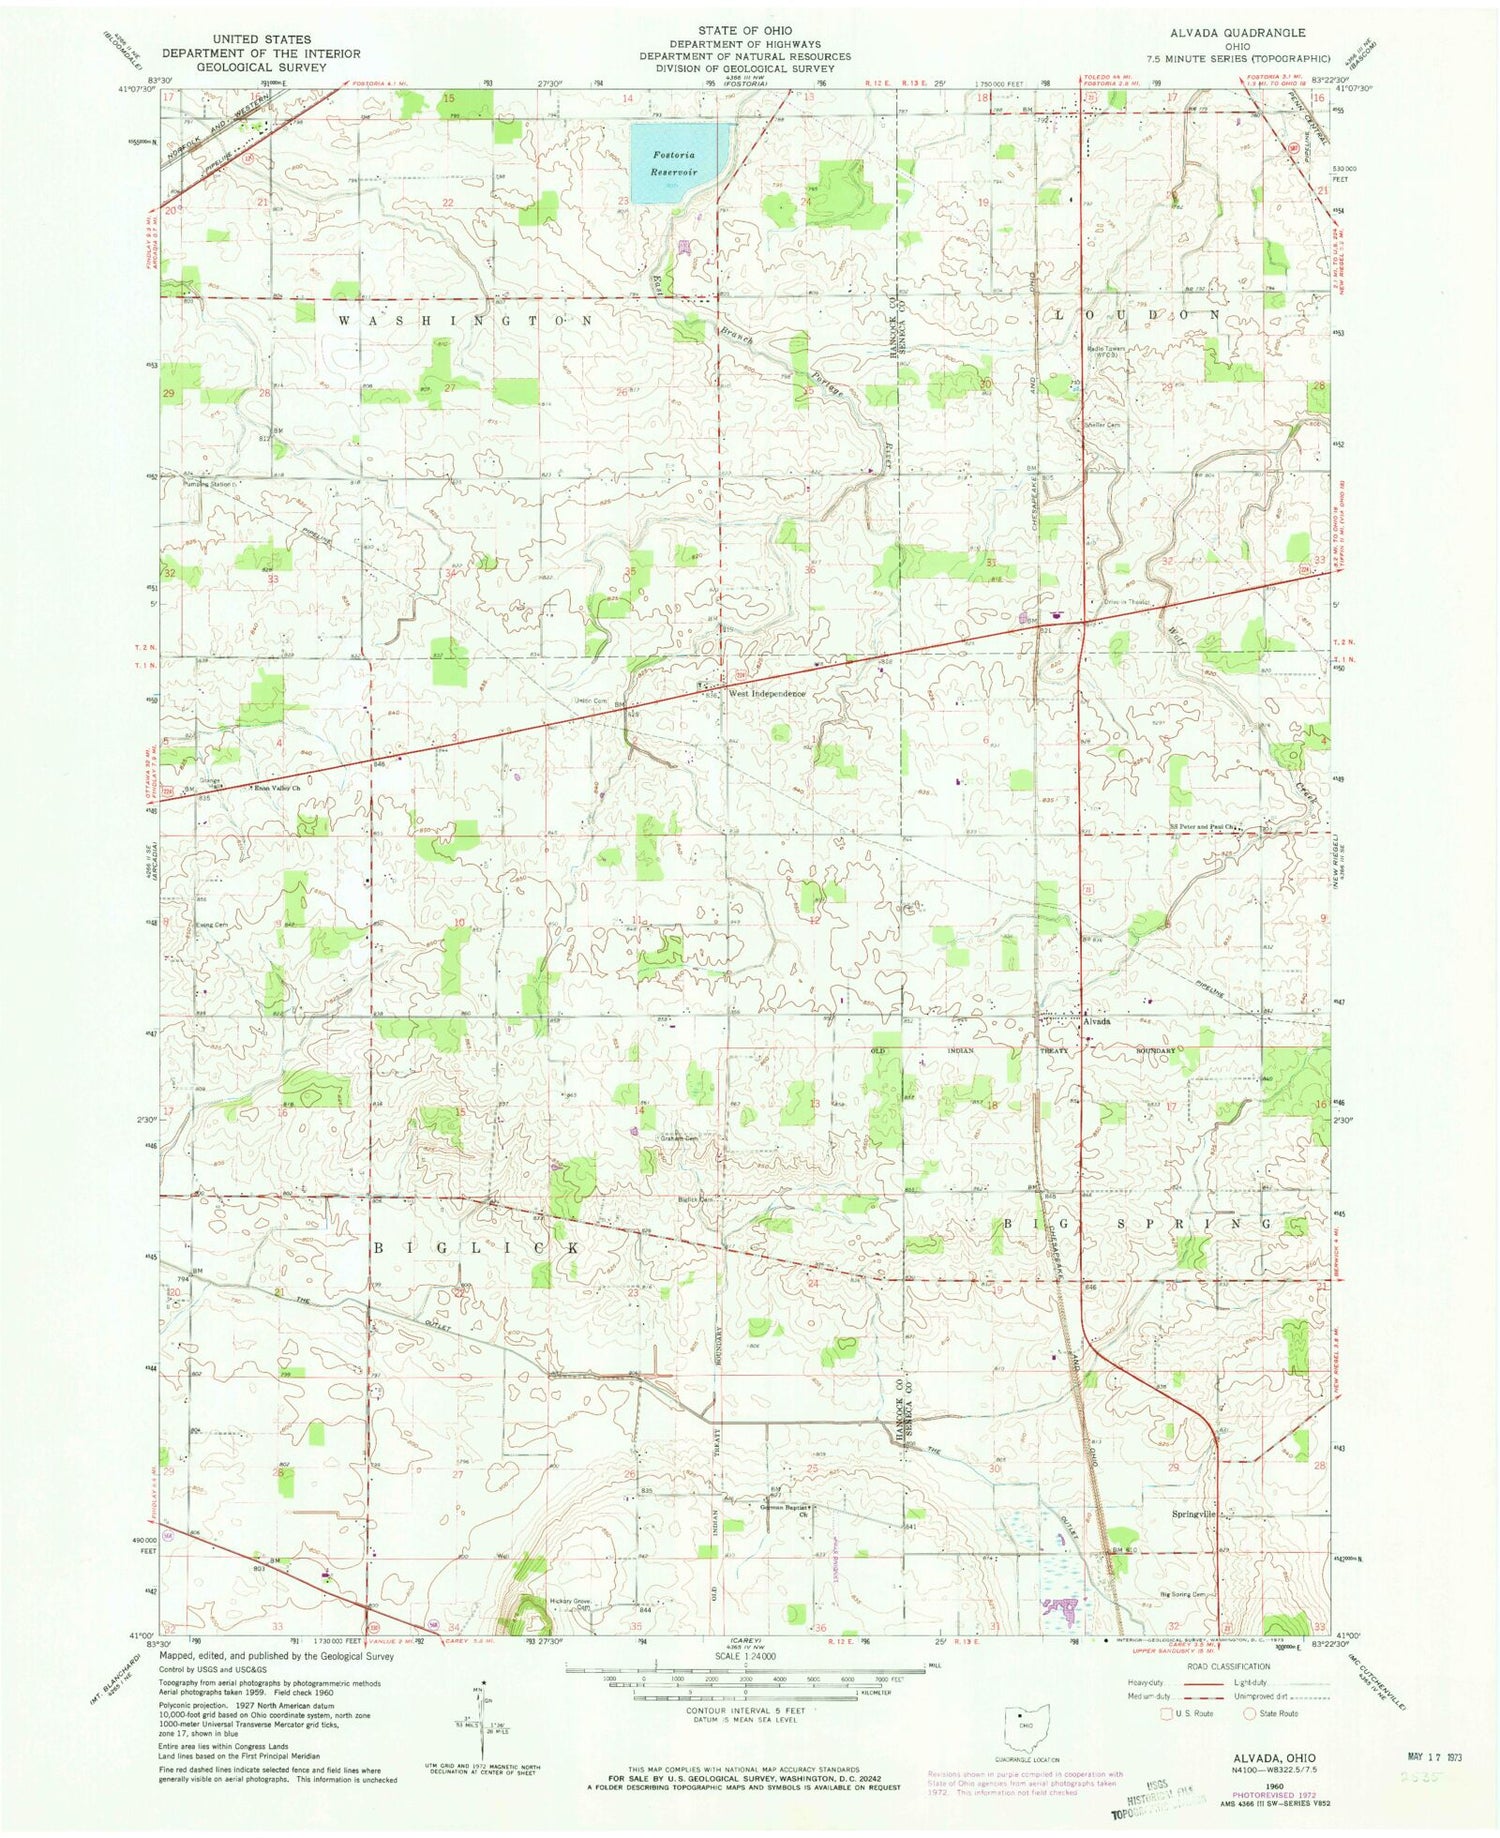 Classic USGS Alvada Ohio 7.5'x7.5' Topo Map Image